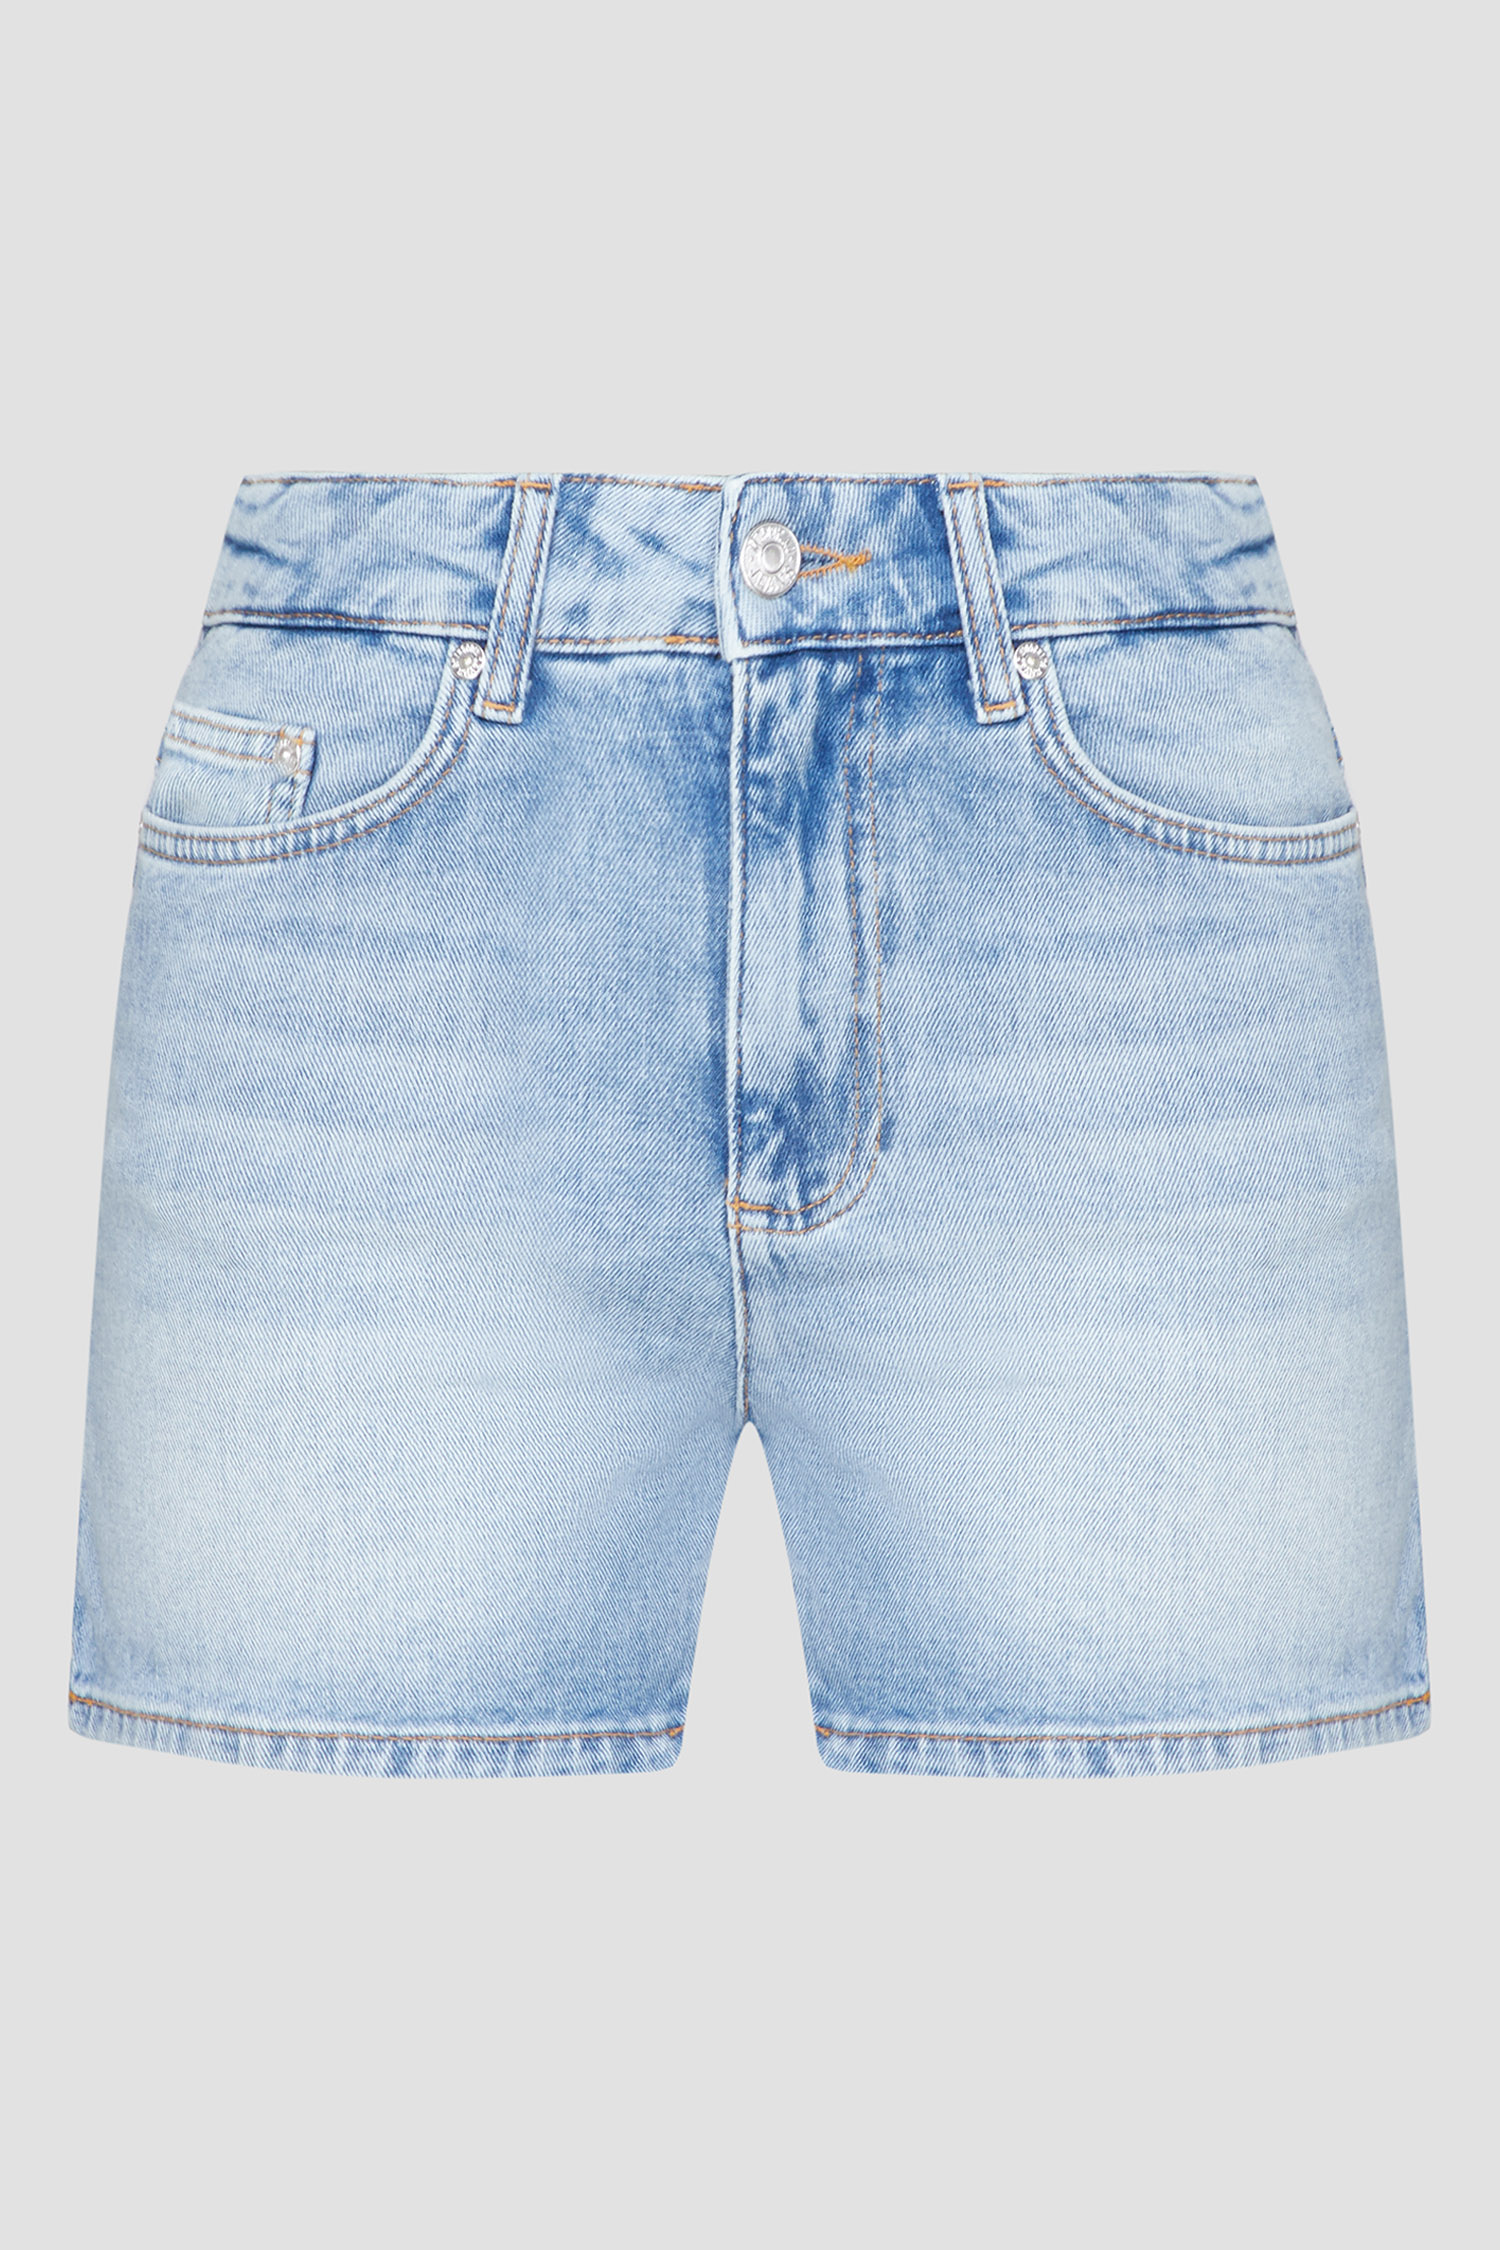 Жіночі блакитні джинсові шорти Moschino J0302.3739;1295